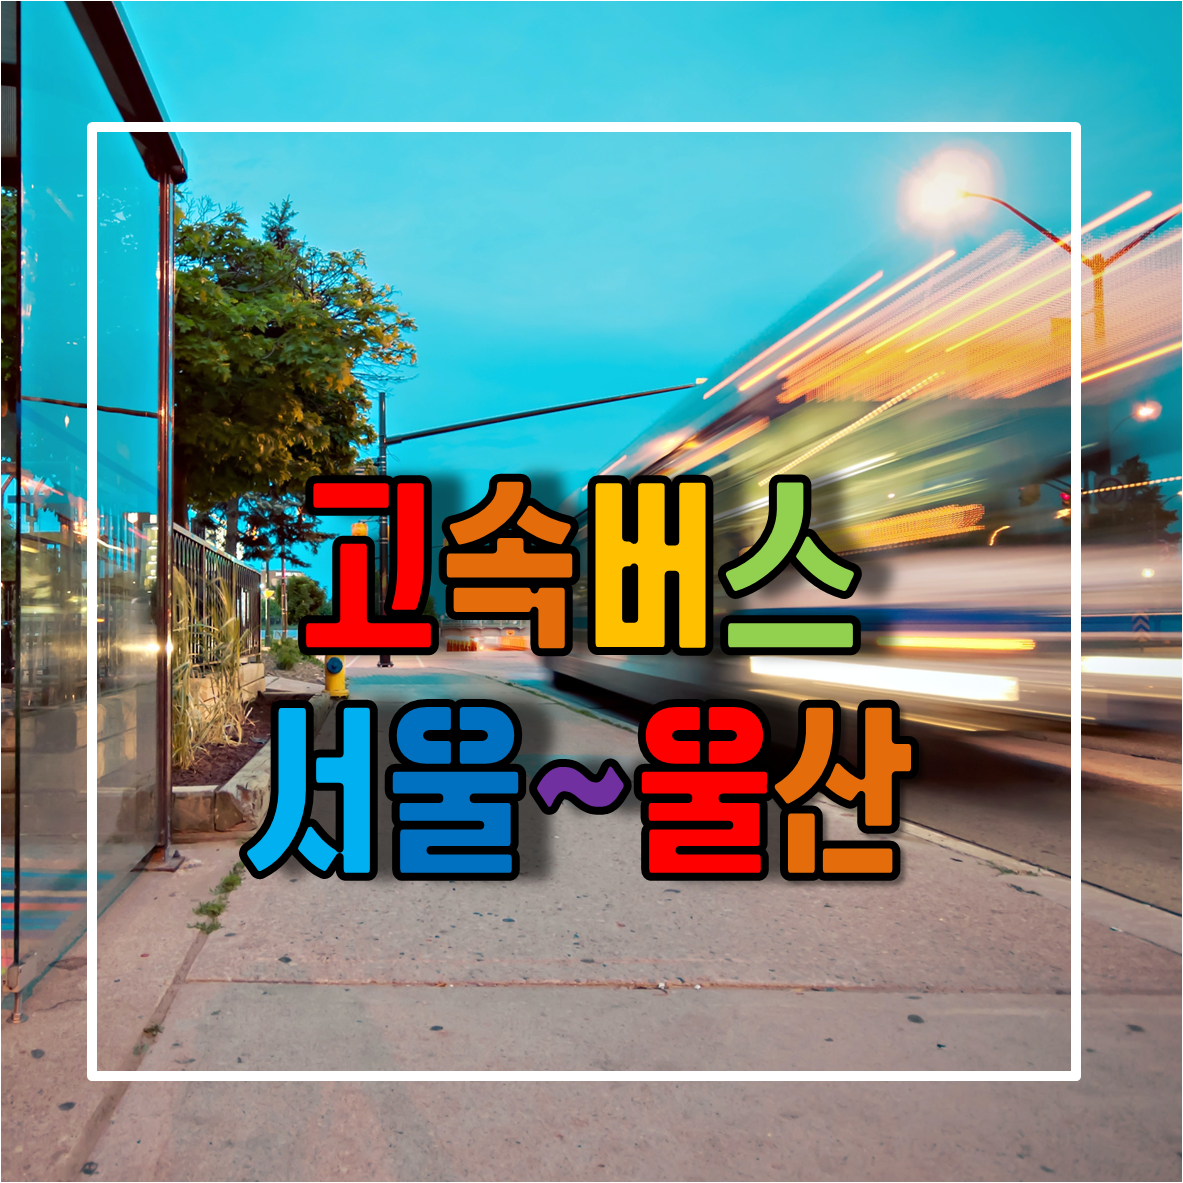 서울에서 울산가는 고속버스 시간표